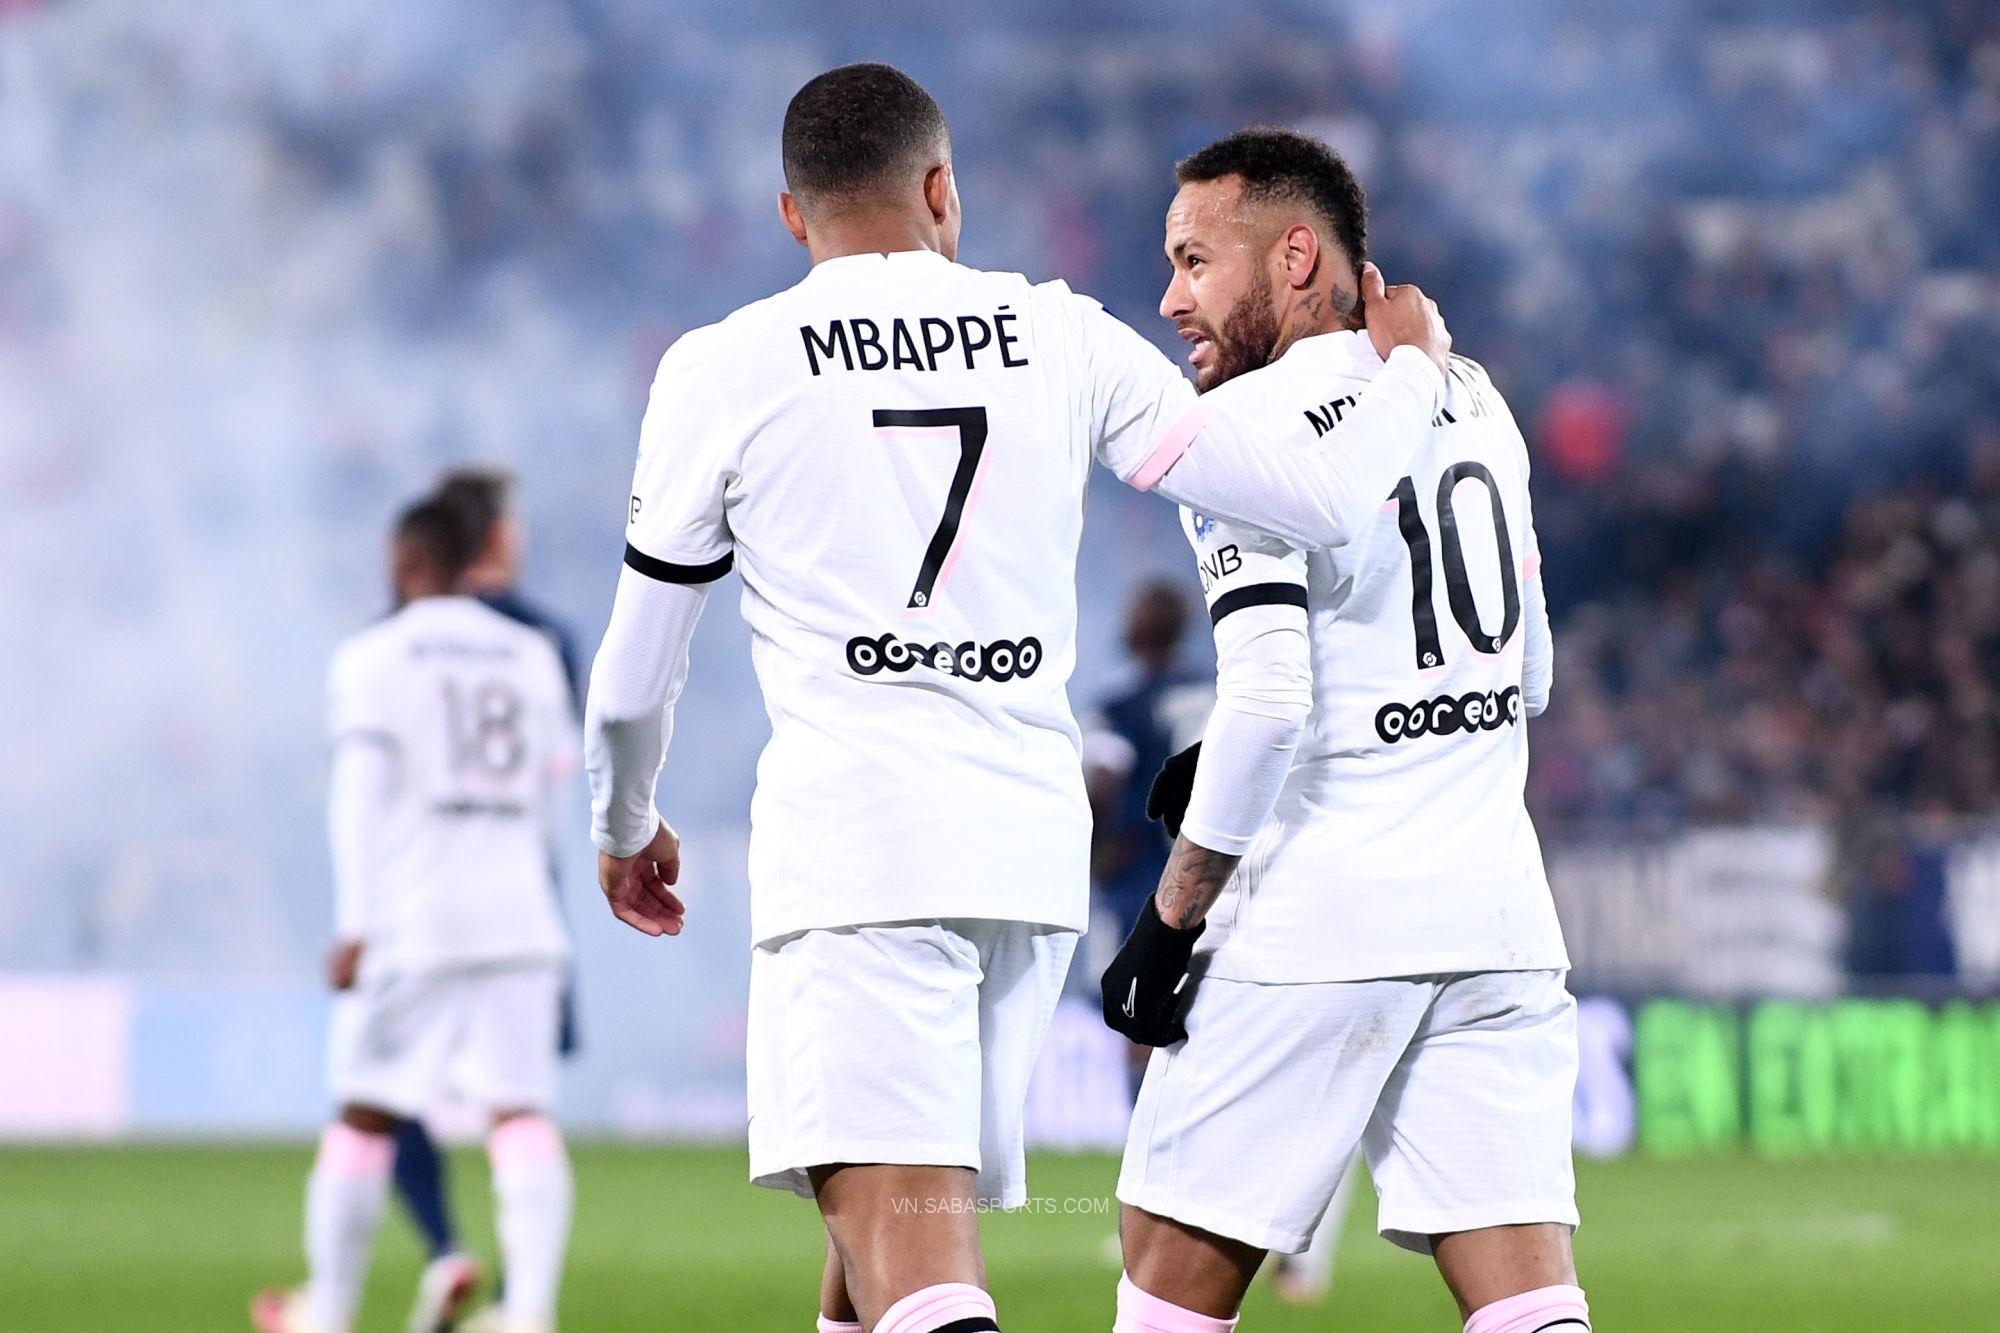 Không Messi, PSG vẫn hạ Bordeaux nhờ song tấu Neymar – Mbappe